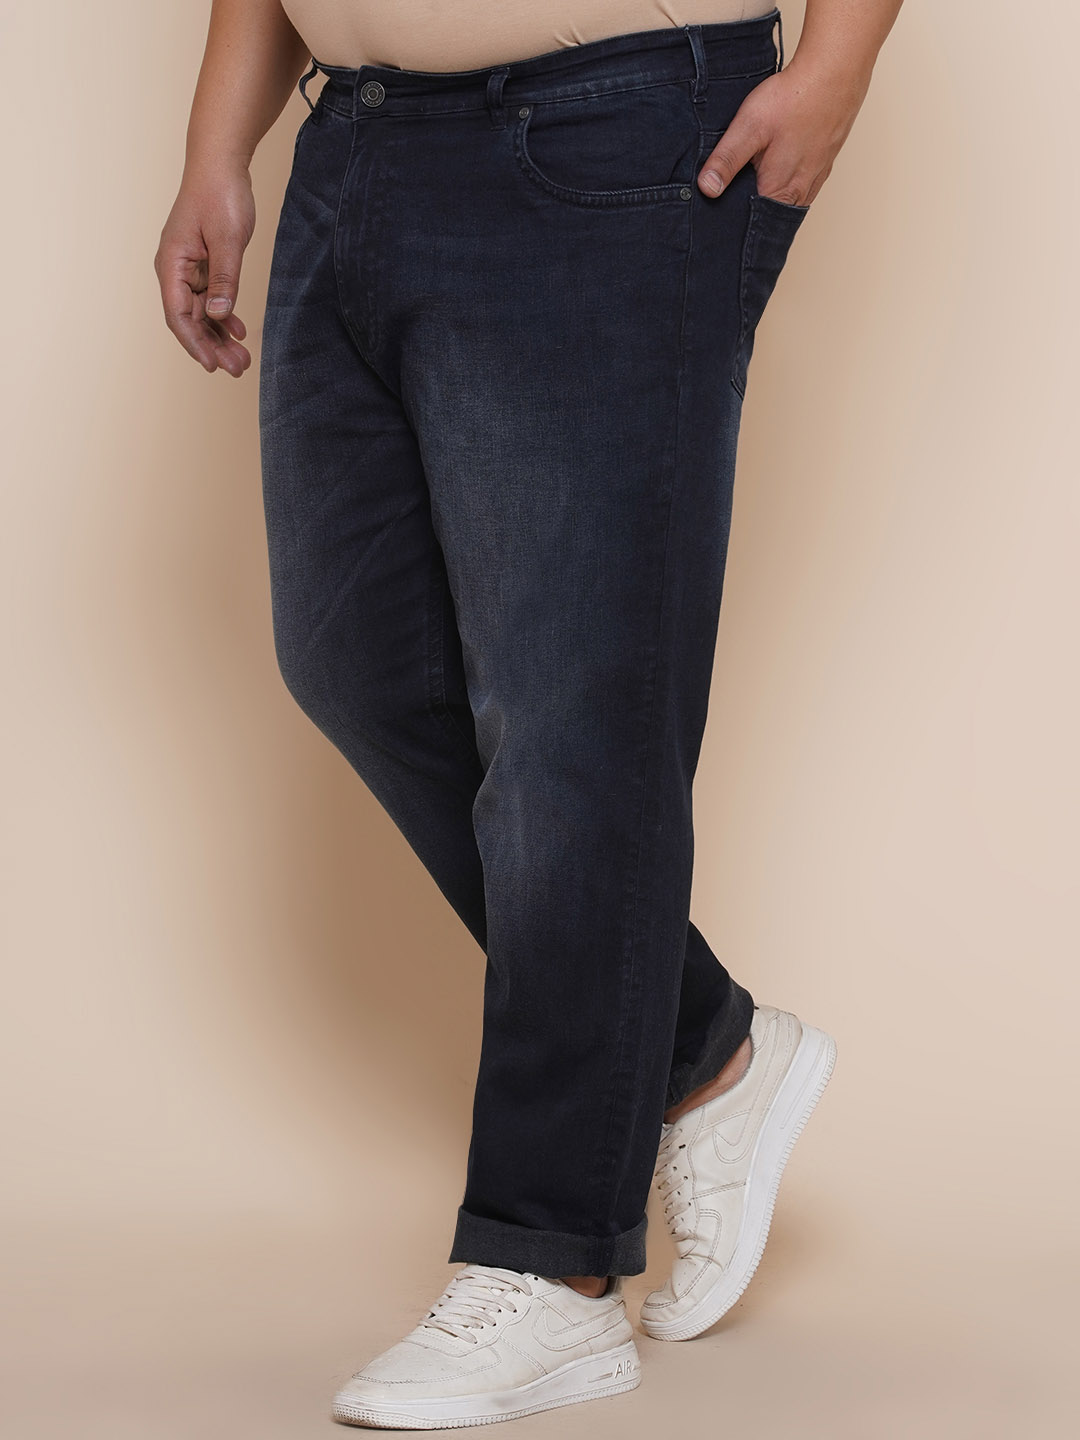 bottomwear/jeans/JPJ12283/jpj12283-4.jpg